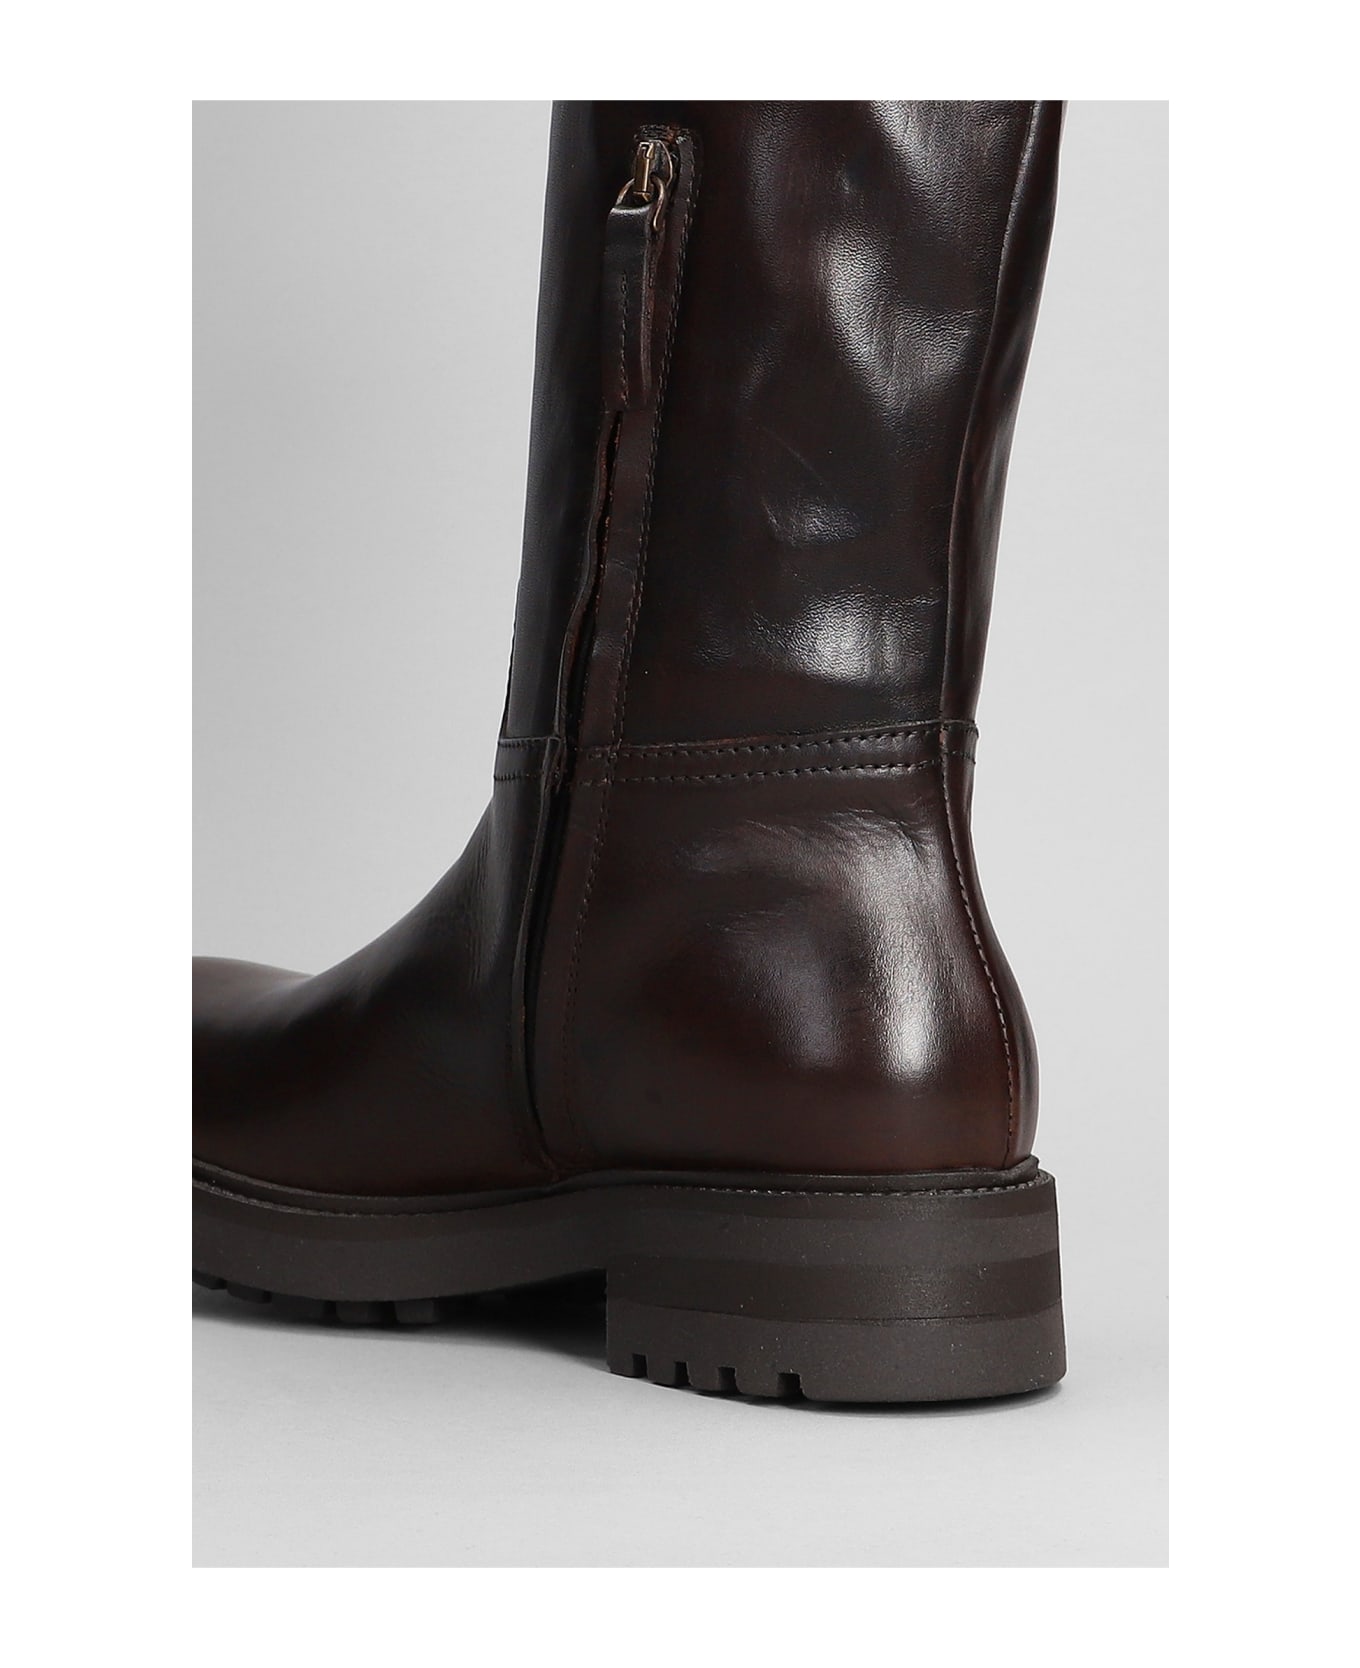 Julie Dee Low Heels Boots In Dark Brown Leather - dark brown